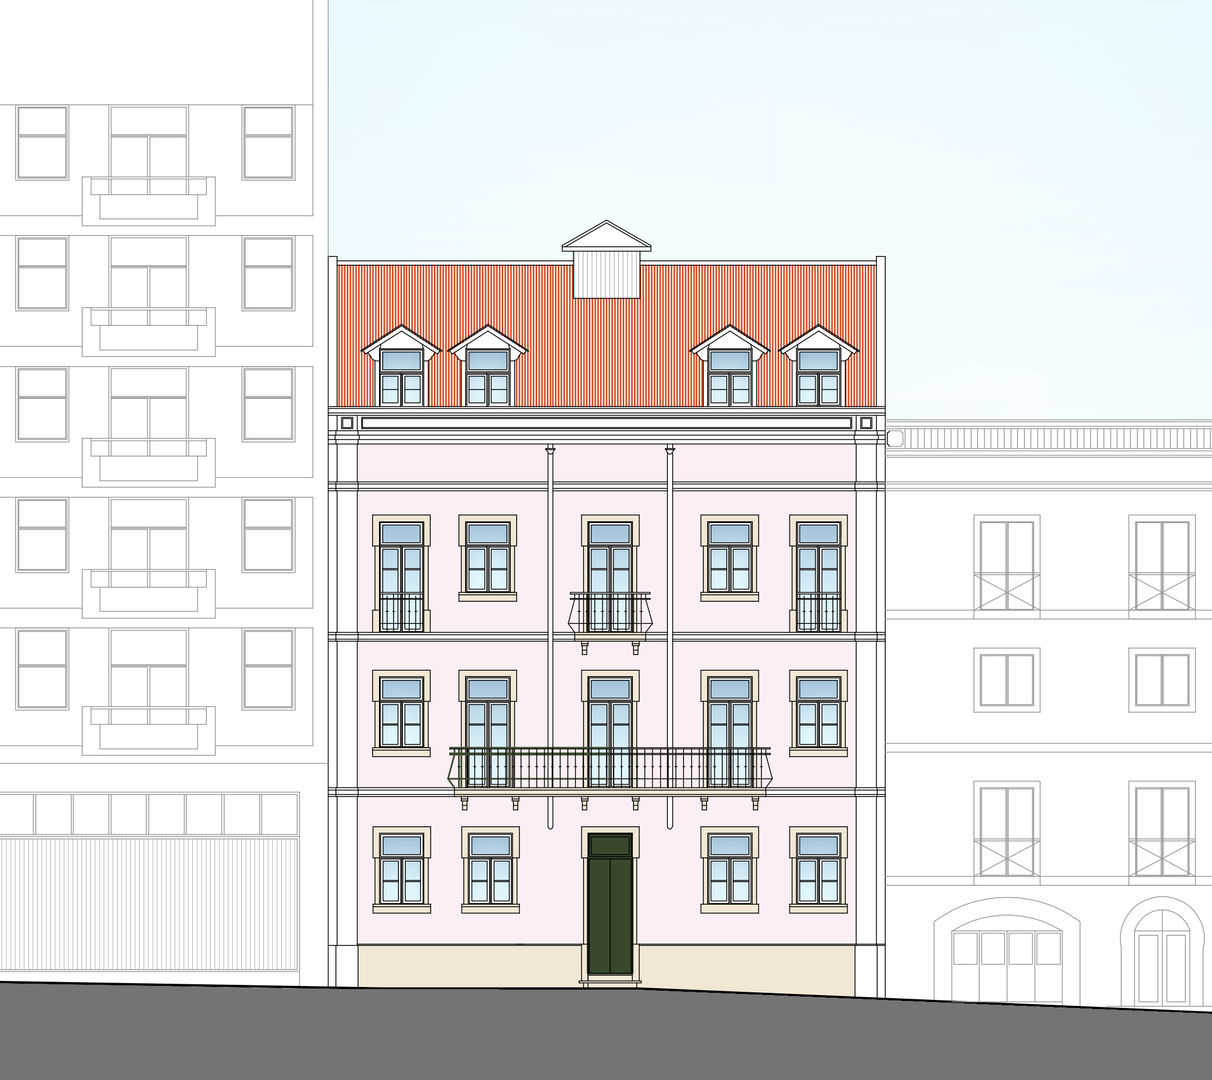 Desenho do Alçado do Prédio MB Arquitetos Casas clássicas fachada lisboeta,baixa pombalina